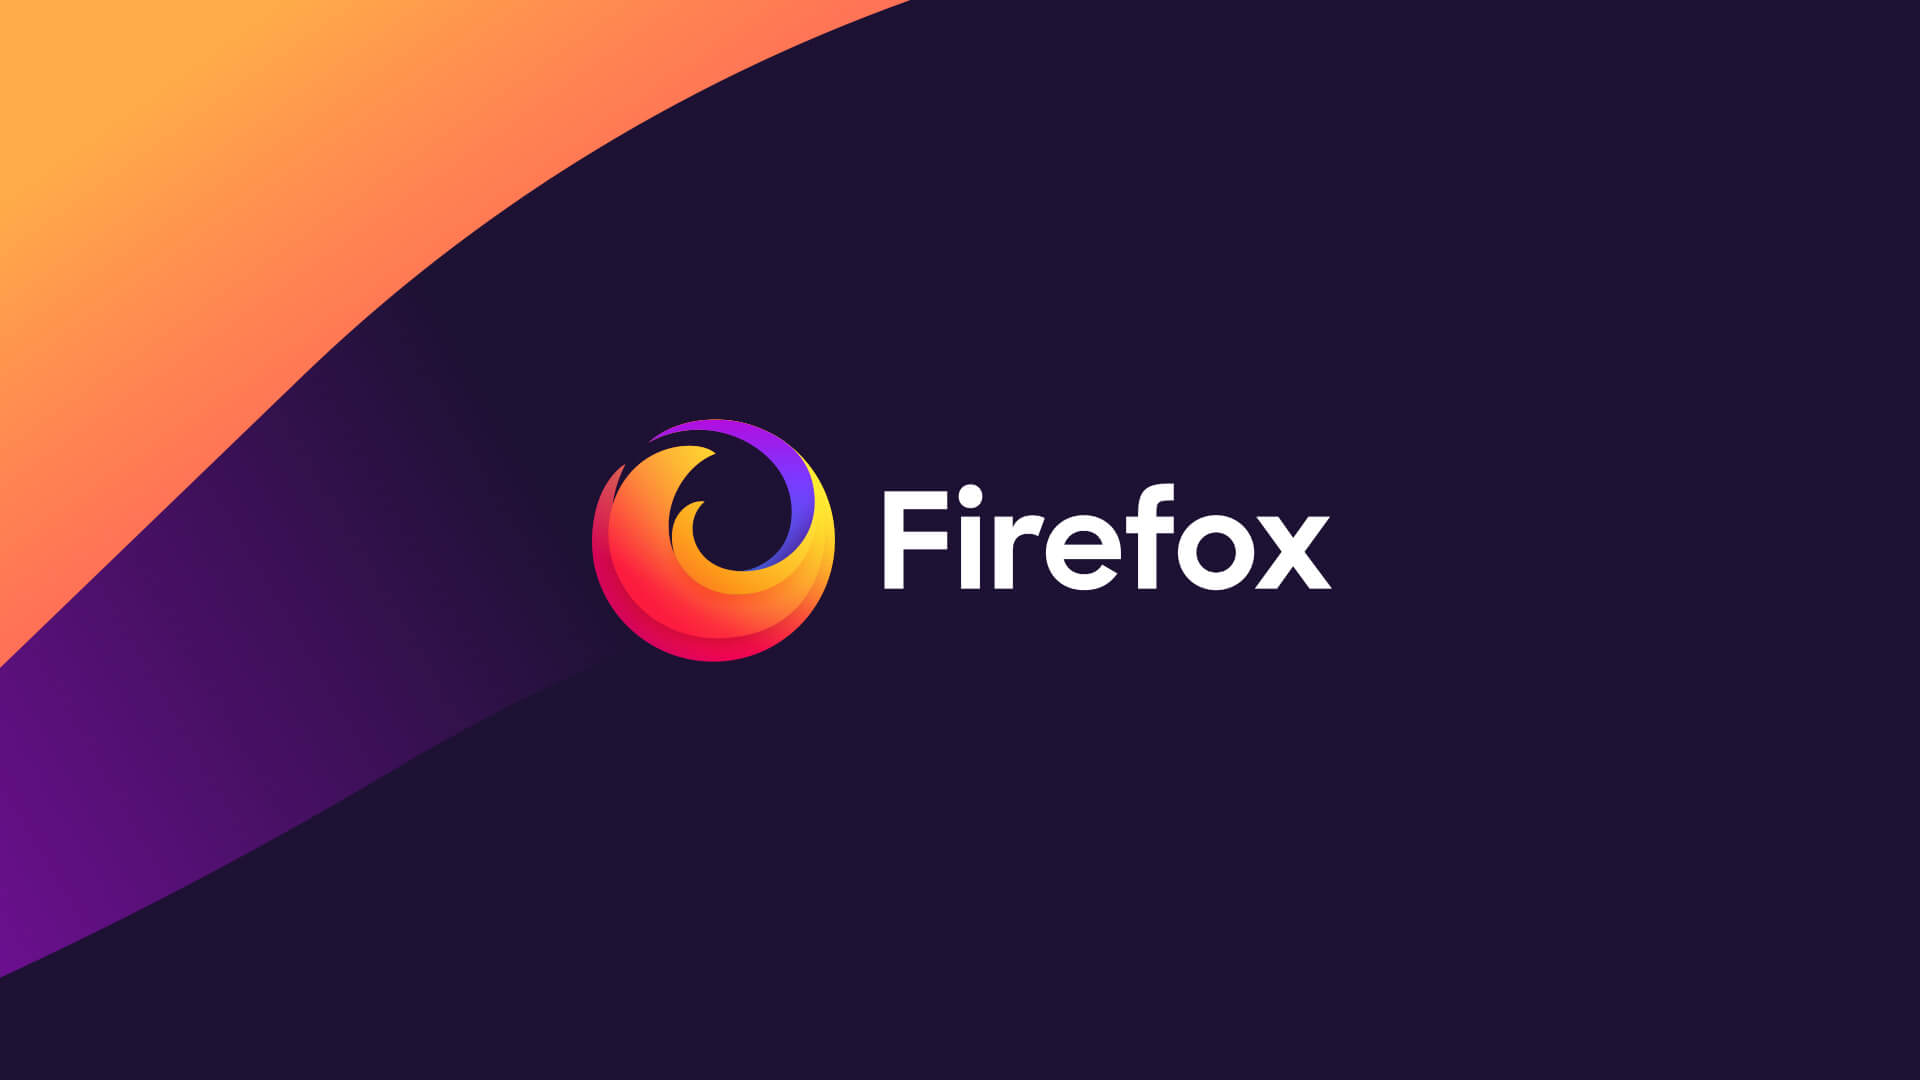 Firefox - Protege tu vida en línea con productos que priorizan la privacidad — Mozilla